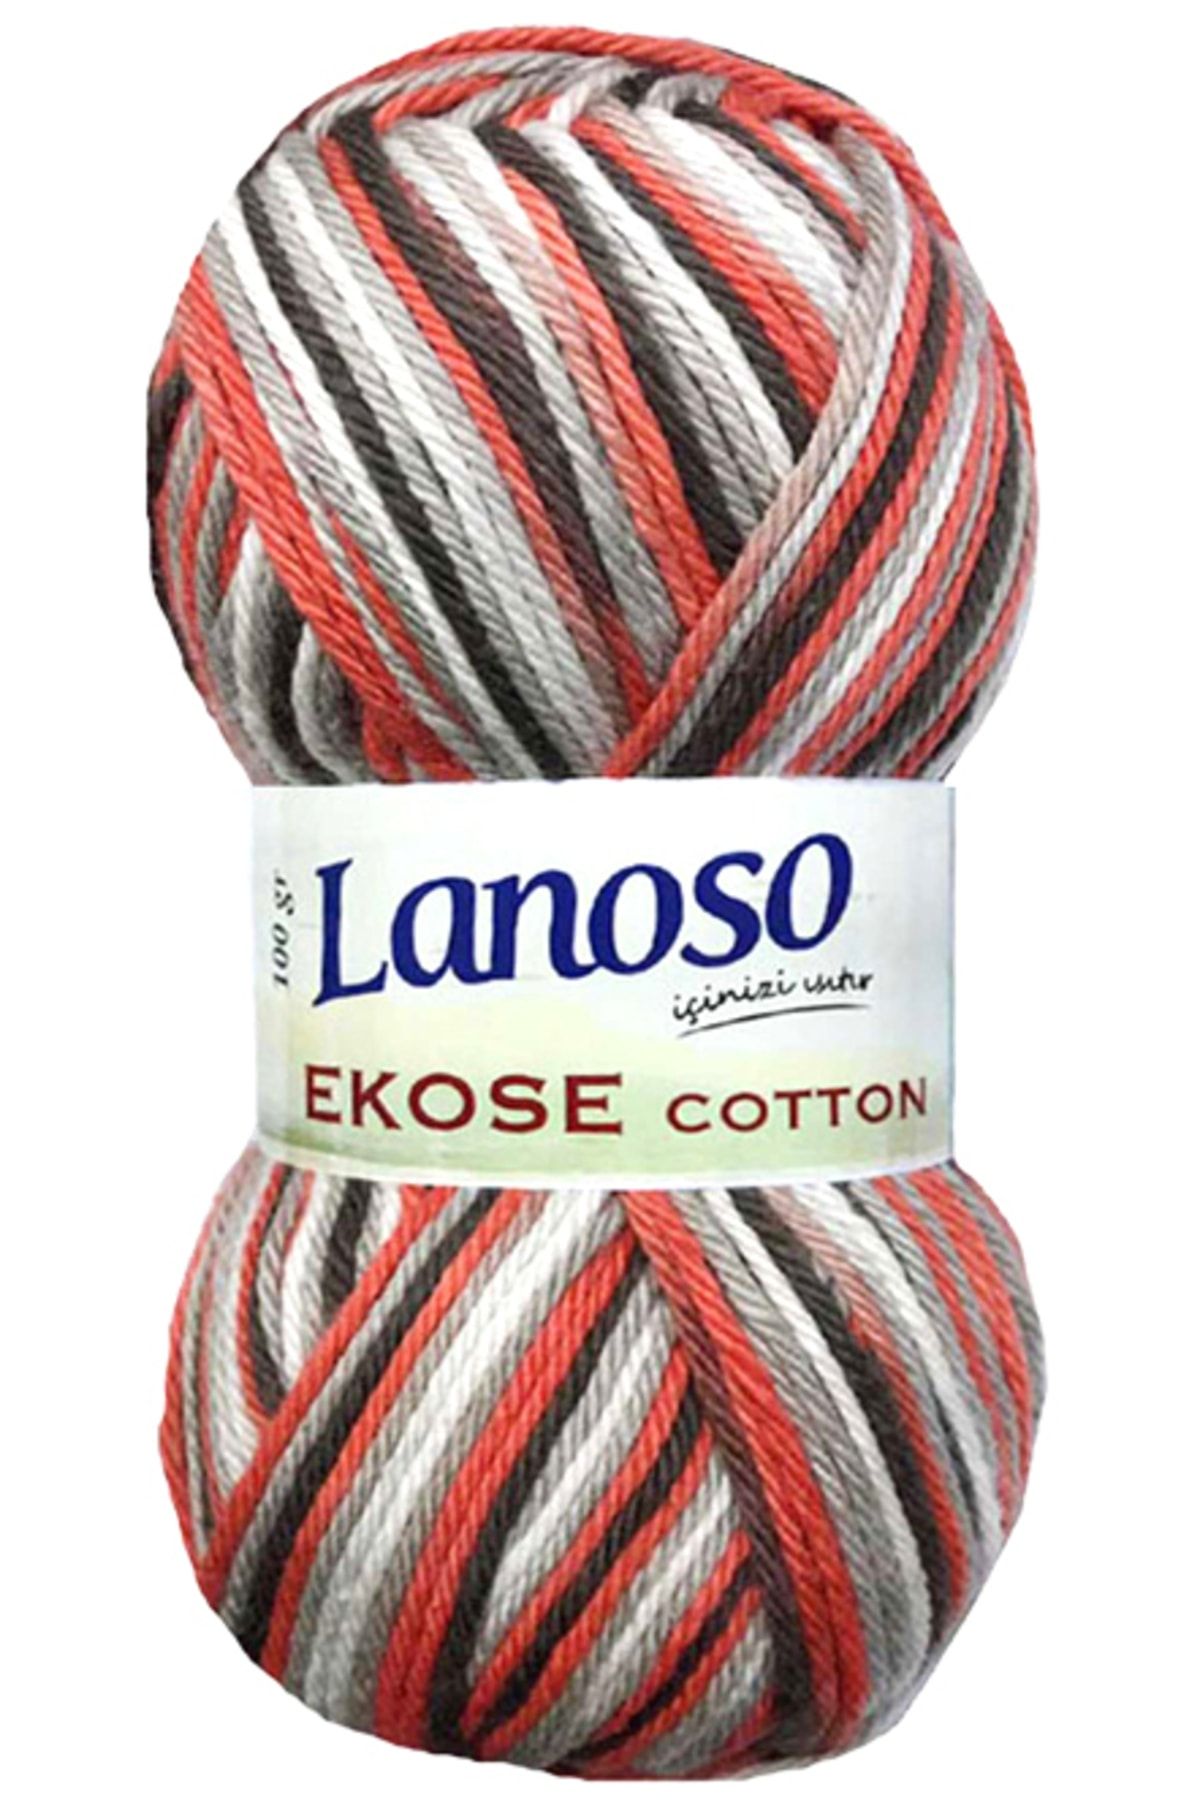 Lanoso Ekose Cotton 805